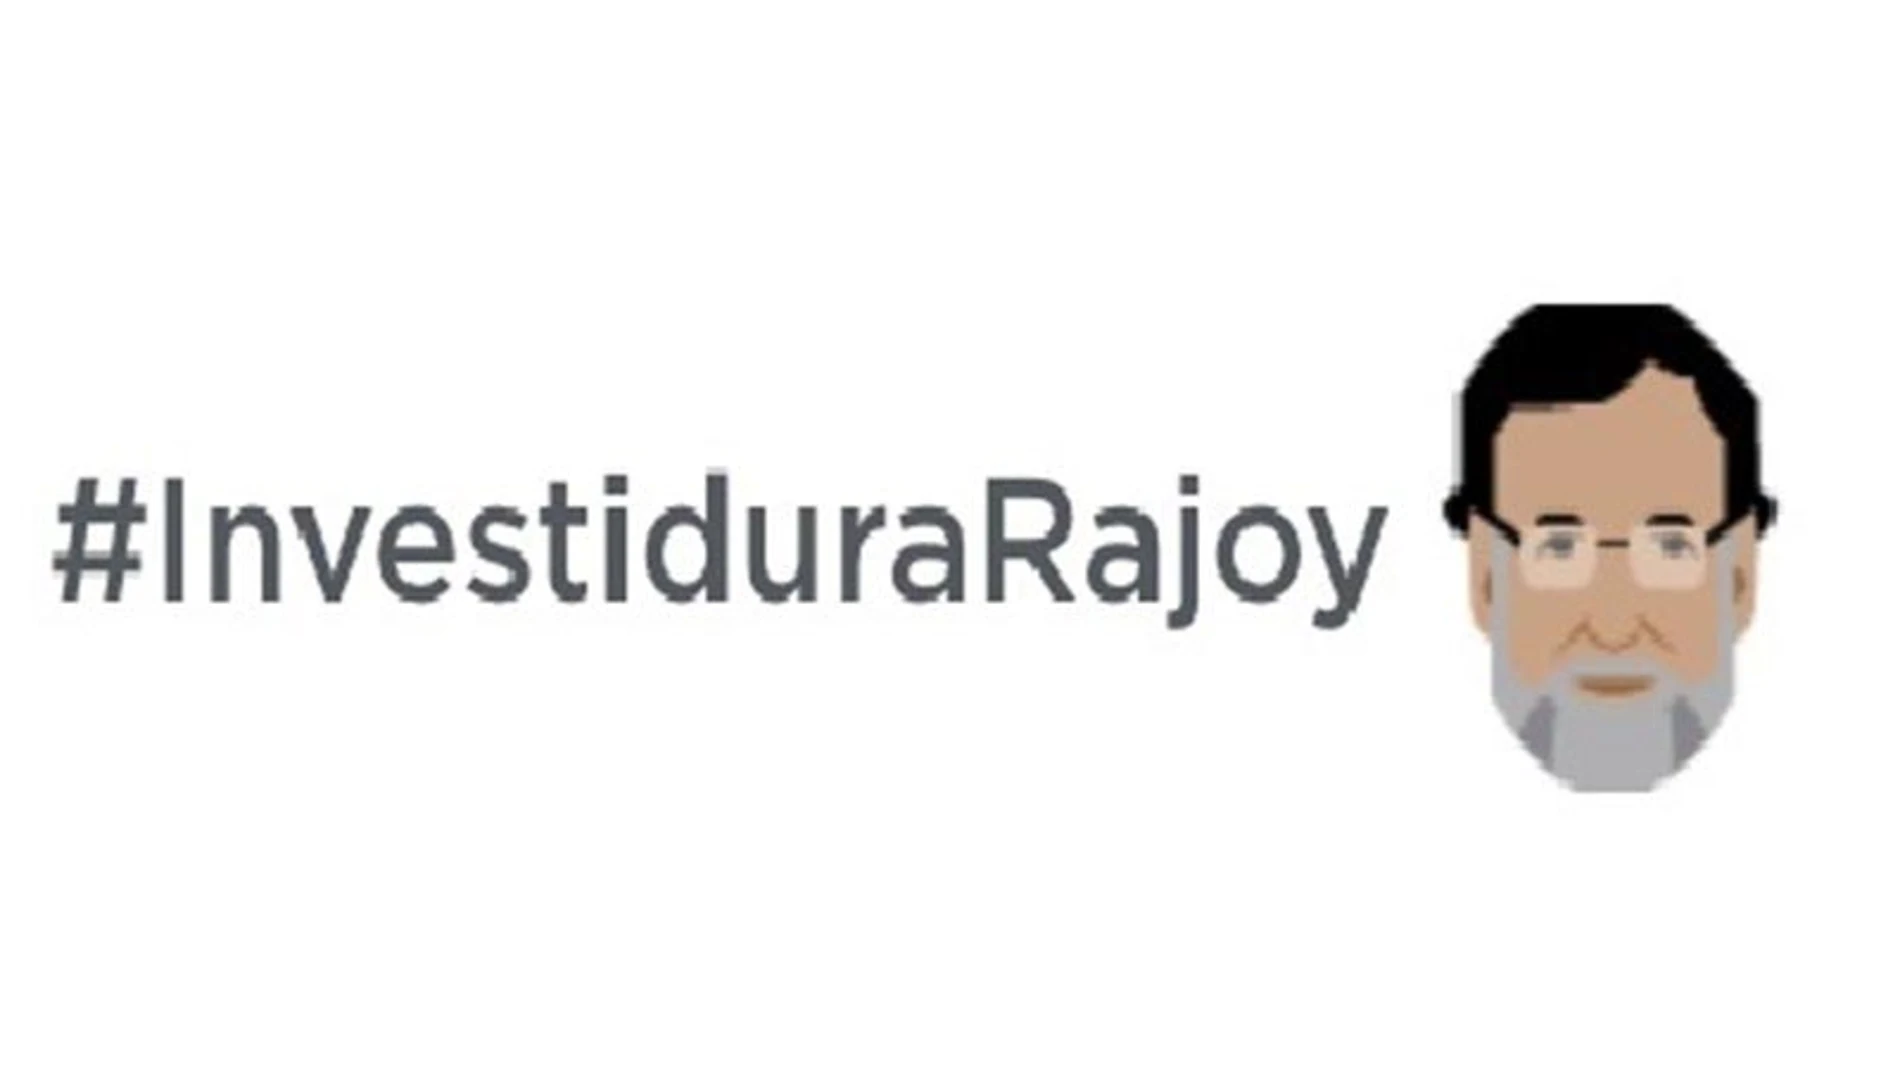 El emoticono aparece al escribir el hastag @InvestiduraRajoy